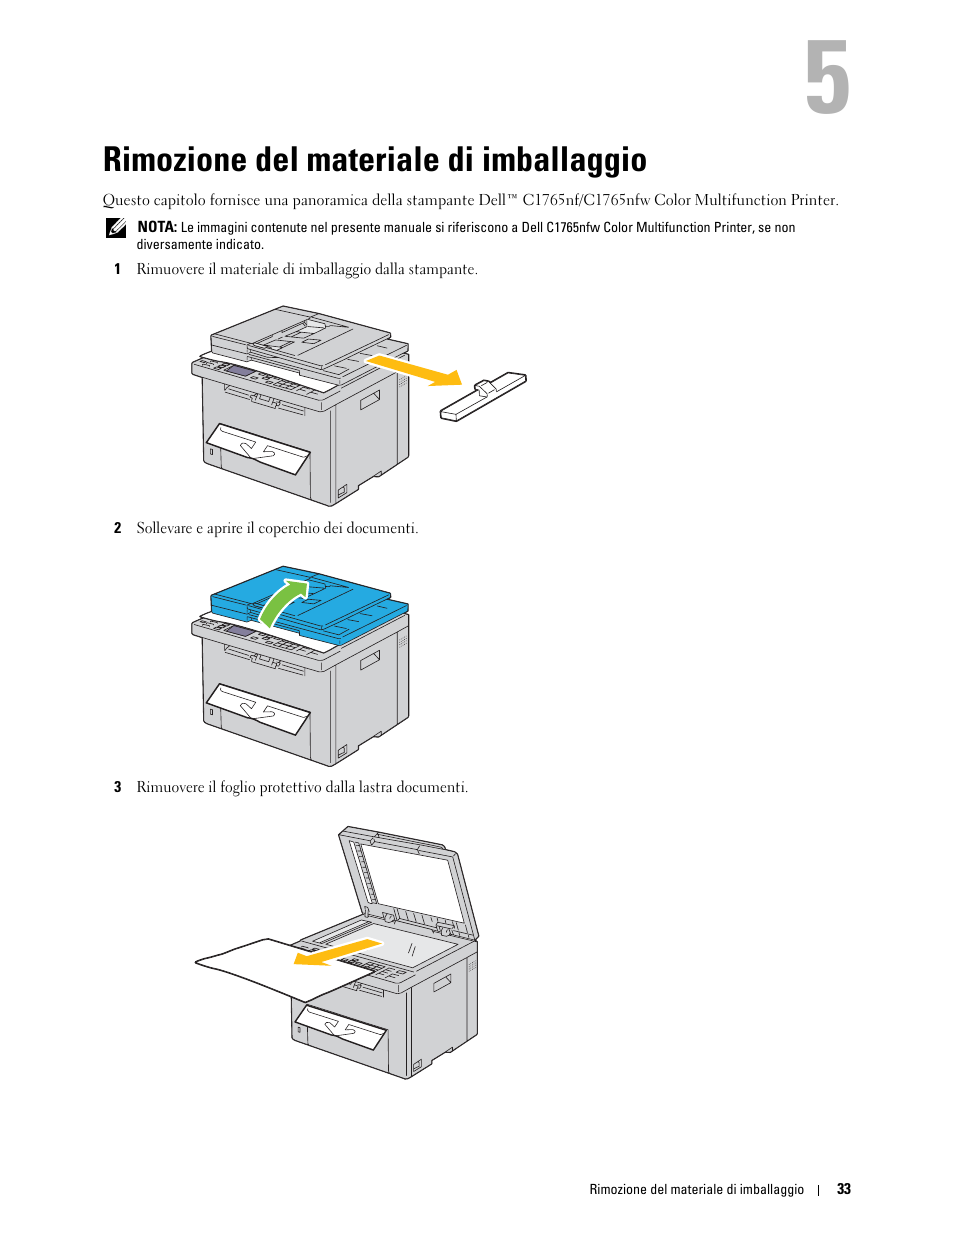 Rimozione del materiale di imballaggio, 5 rimozione del materiale di imballaggio | Dell C1765NFW MFP Laser Printer Manuale d'uso | Pagina 35 / 390